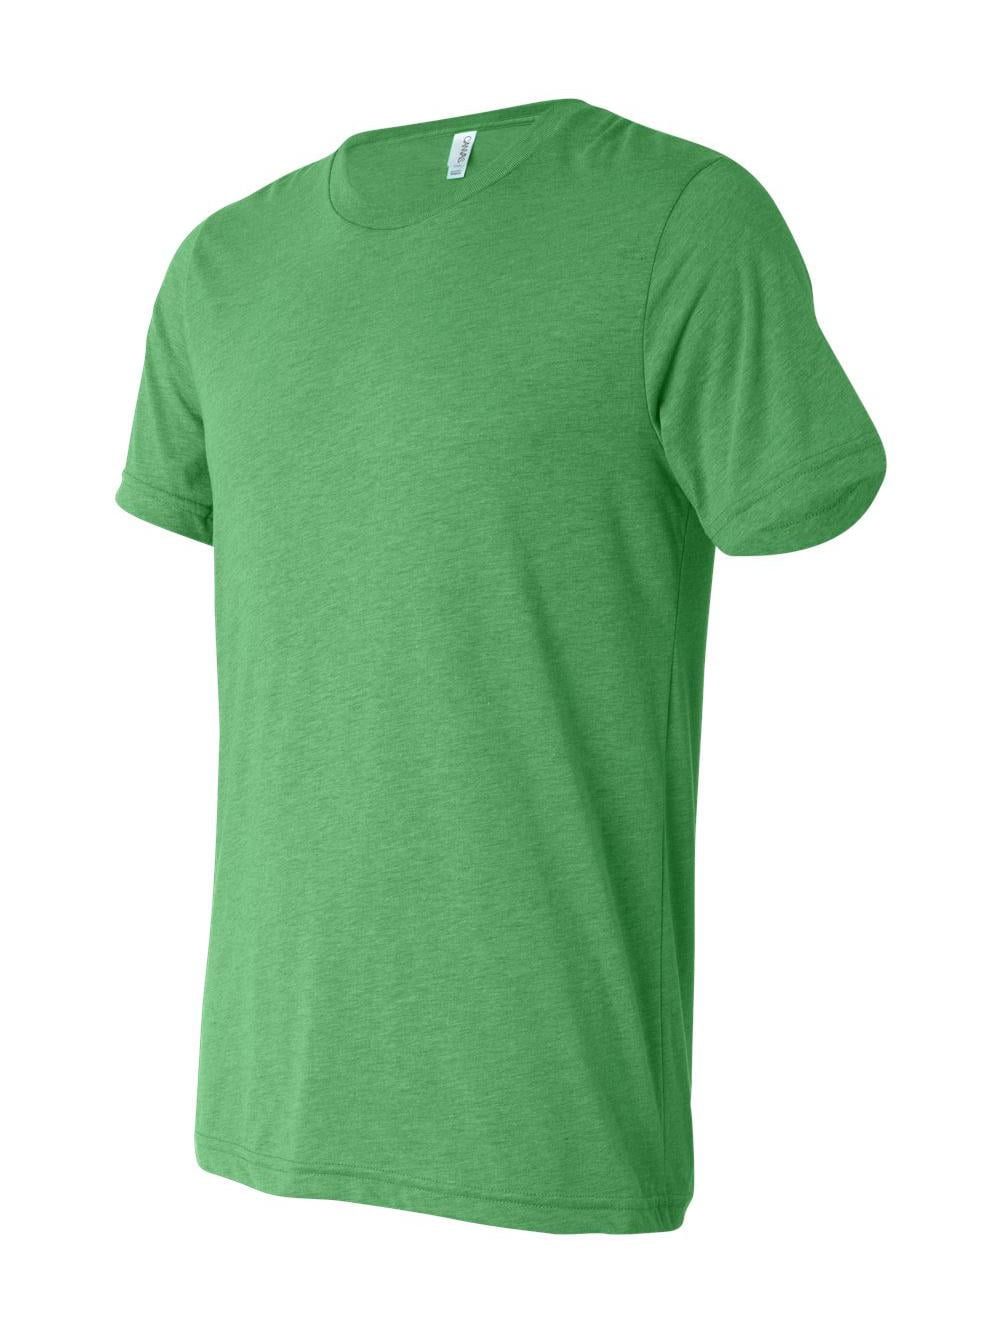 Triblend 2XL - TRIBLEND - OATMEAL Unisex T-Shirt